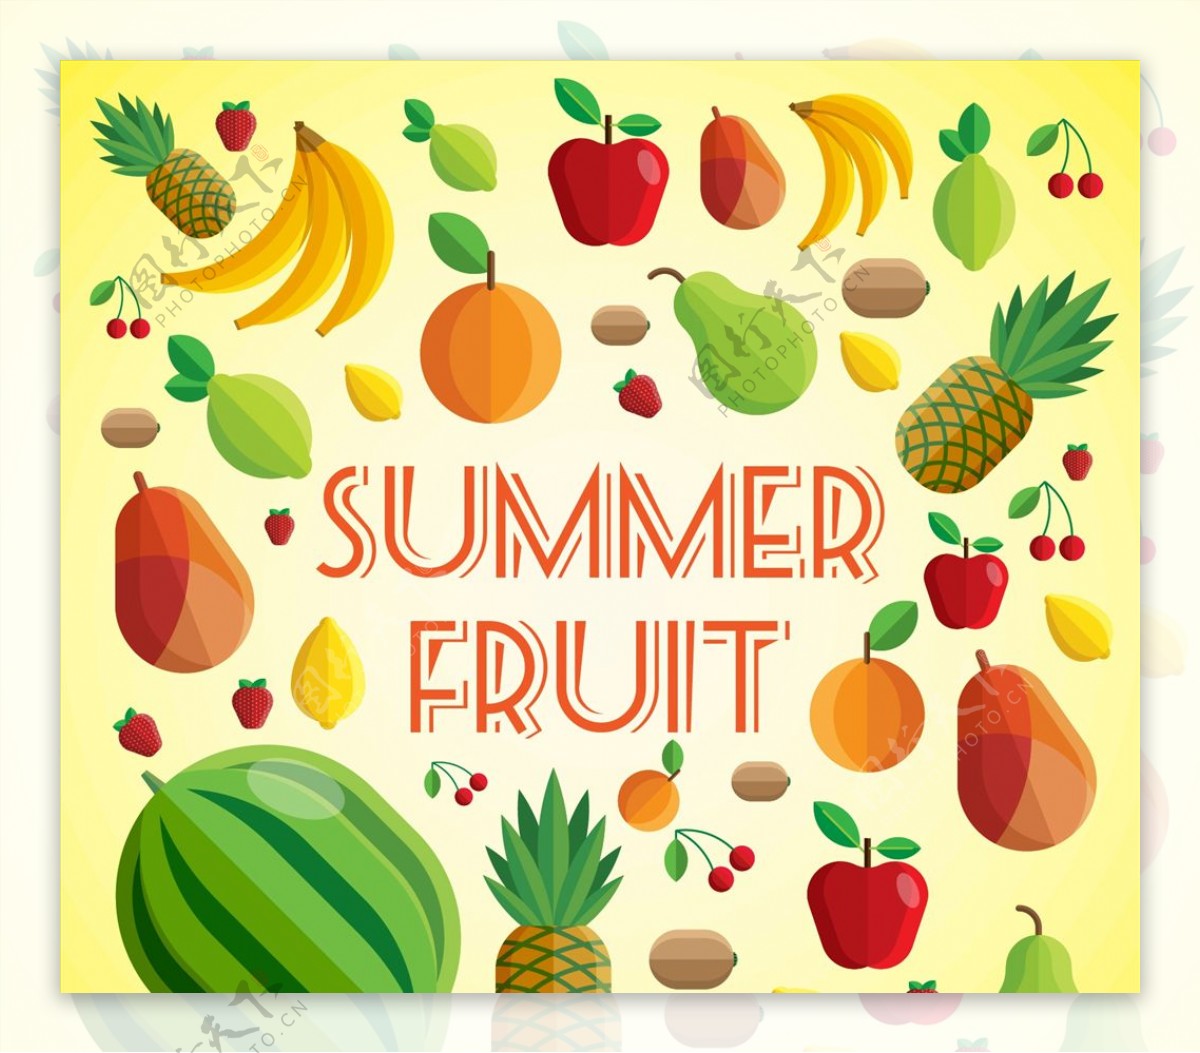 各种夏季水果图片